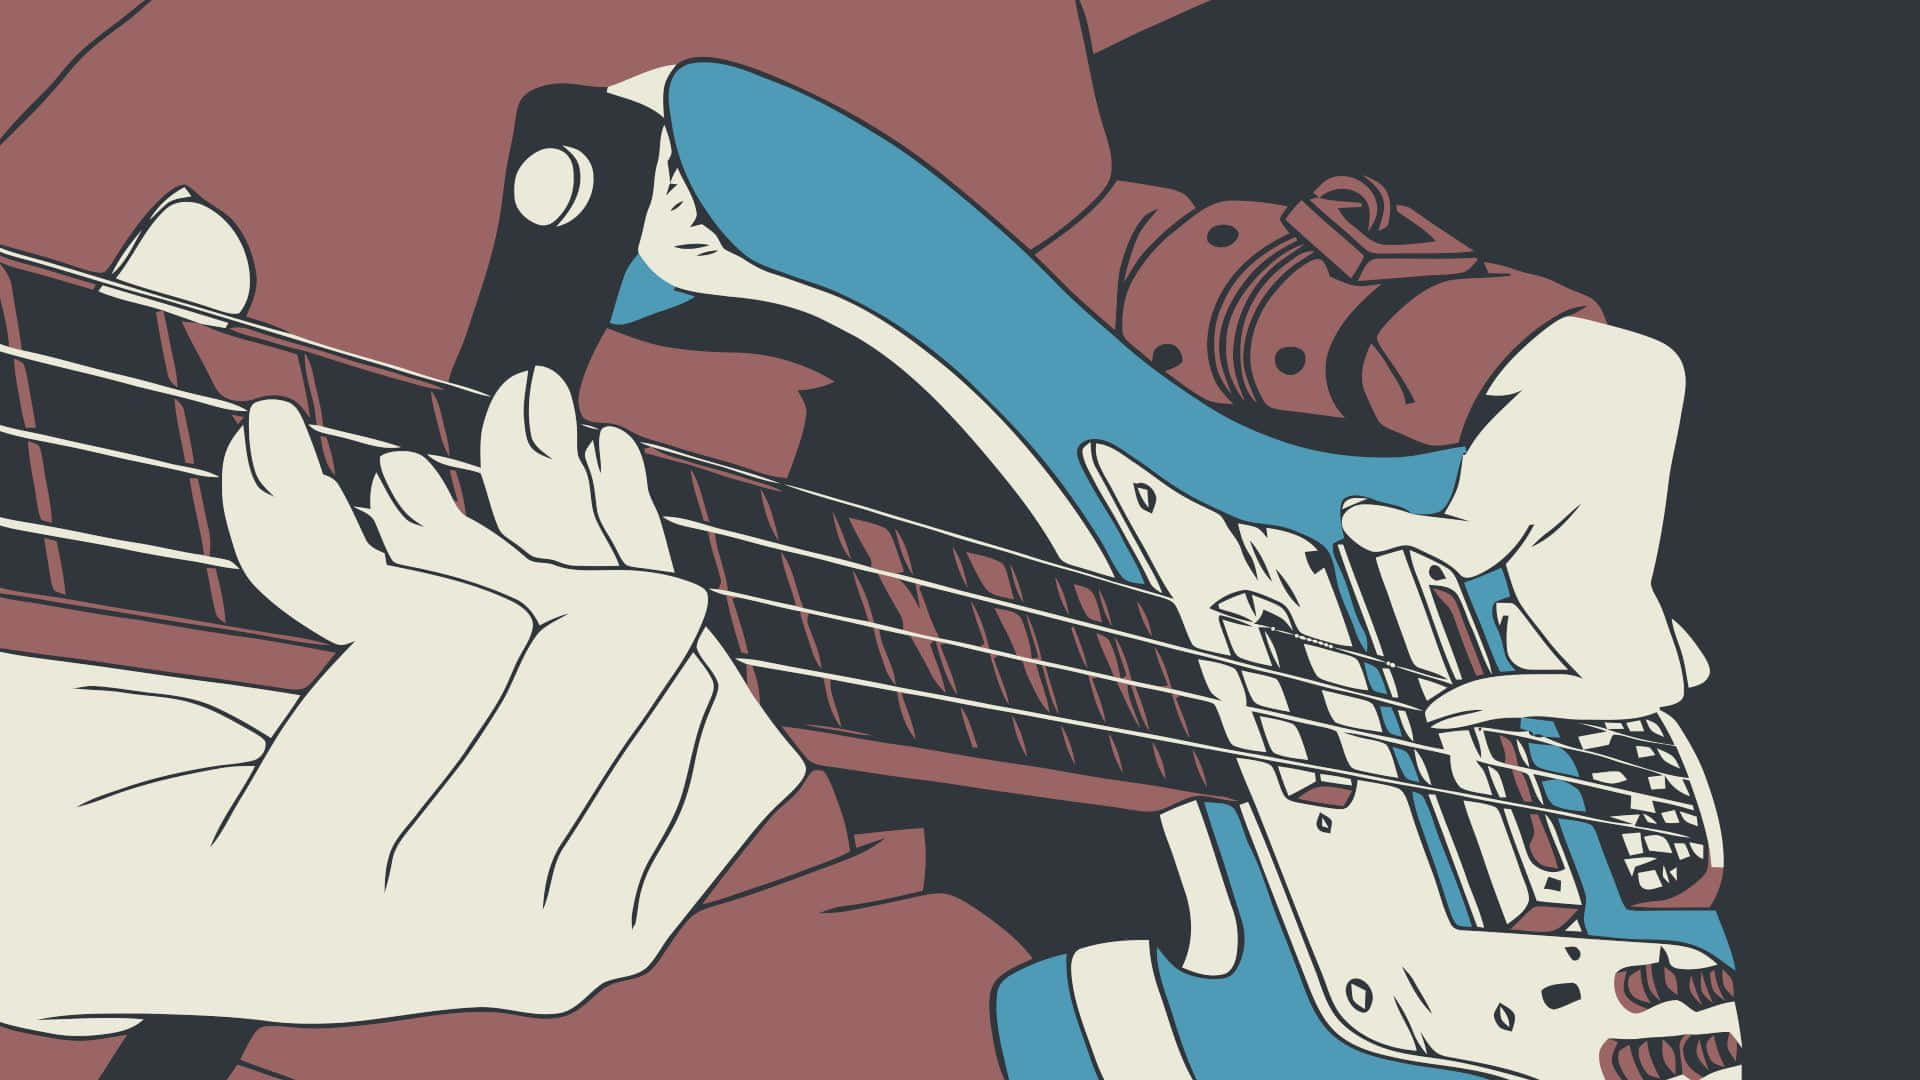 Bass Guitaristin Action.jpg Wallpaper